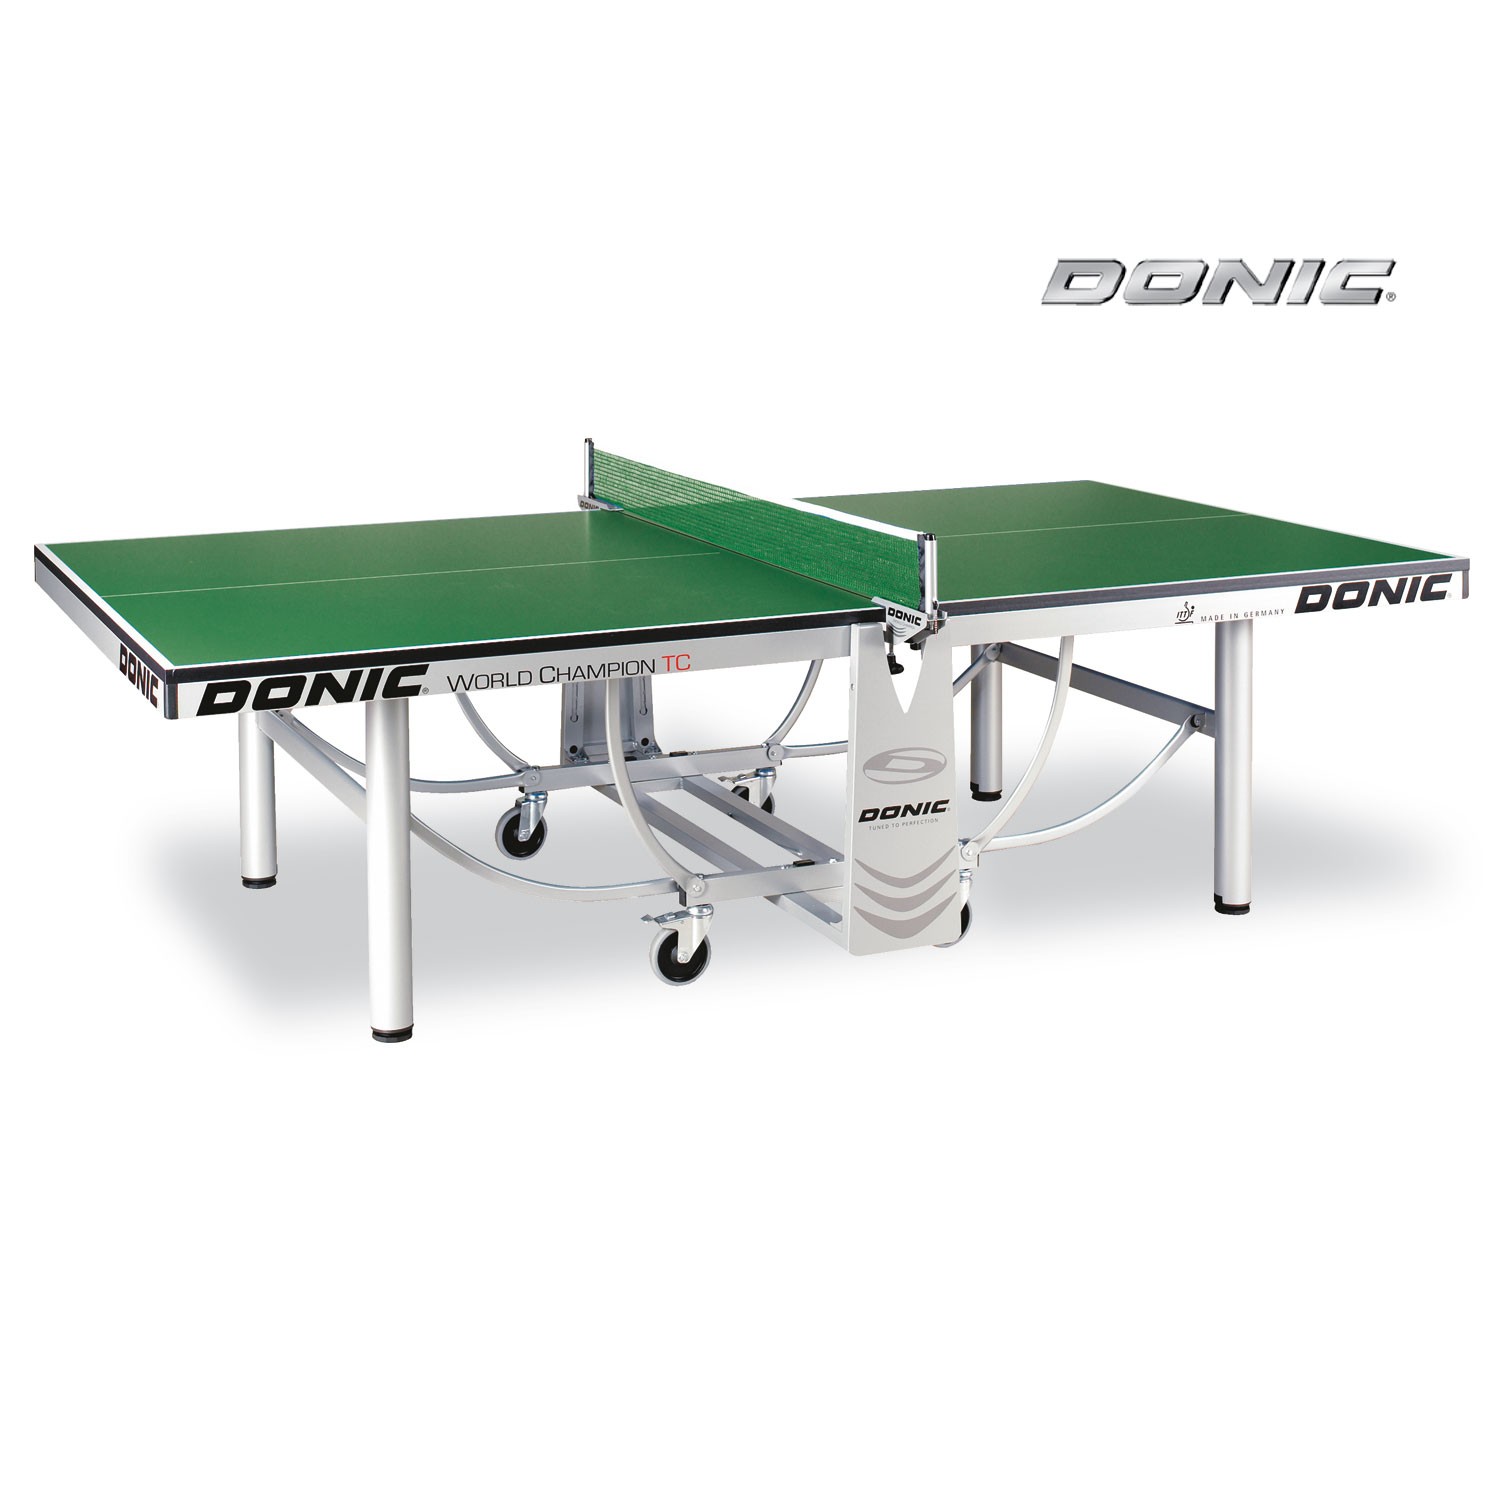 Теннисный стол Donic WORLD CHAMPION TC зеленый (без сетки)